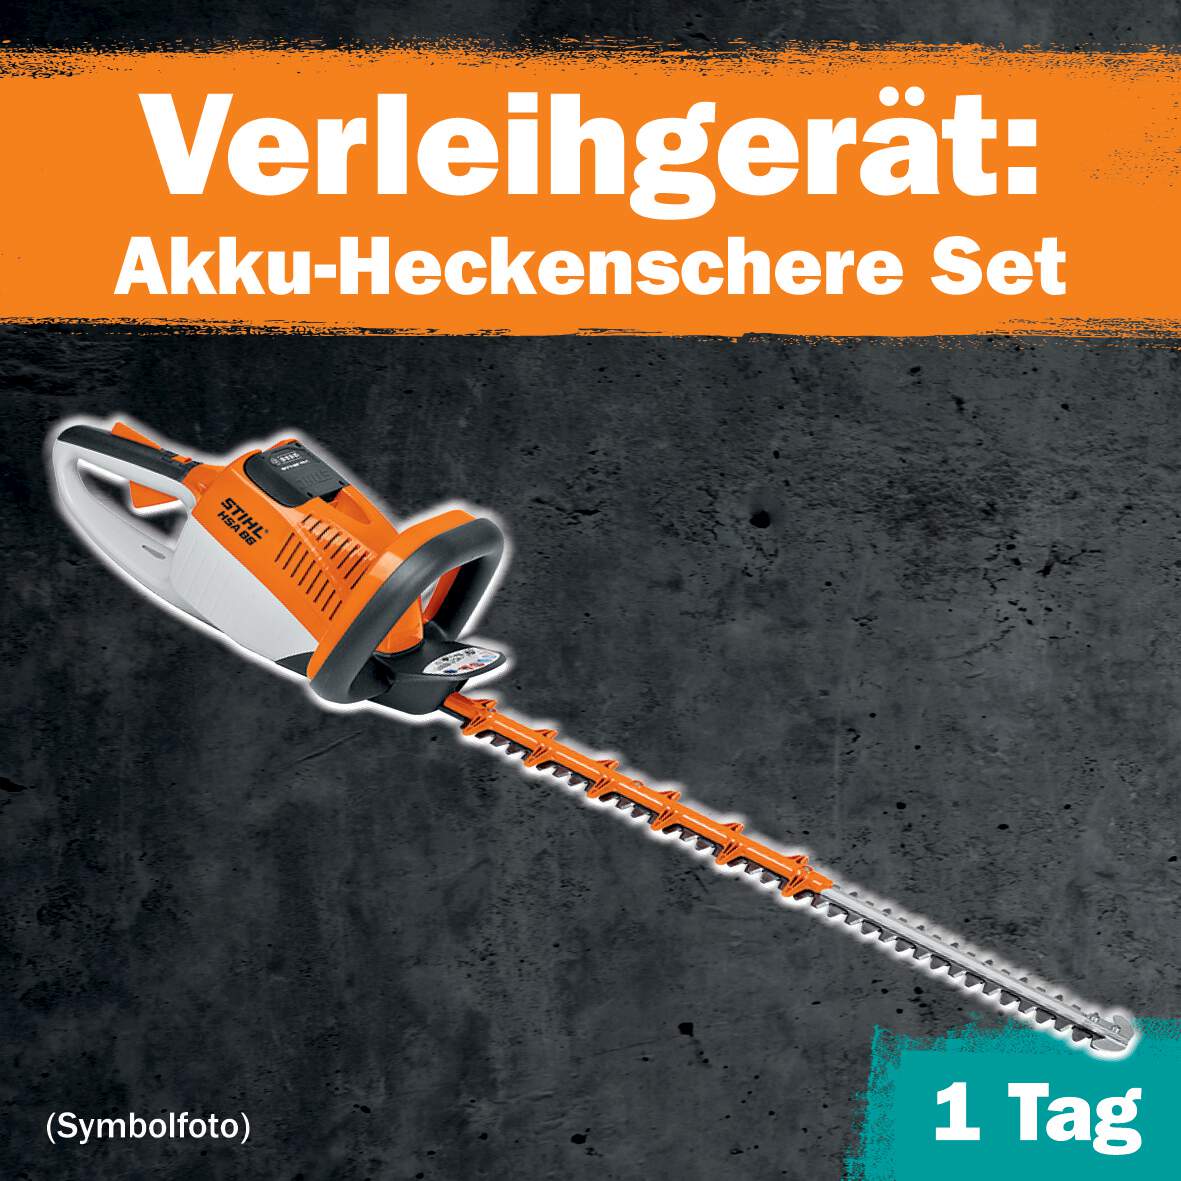 1288684 - Akku-Heckenschere Set 1 Tag Leihdauer